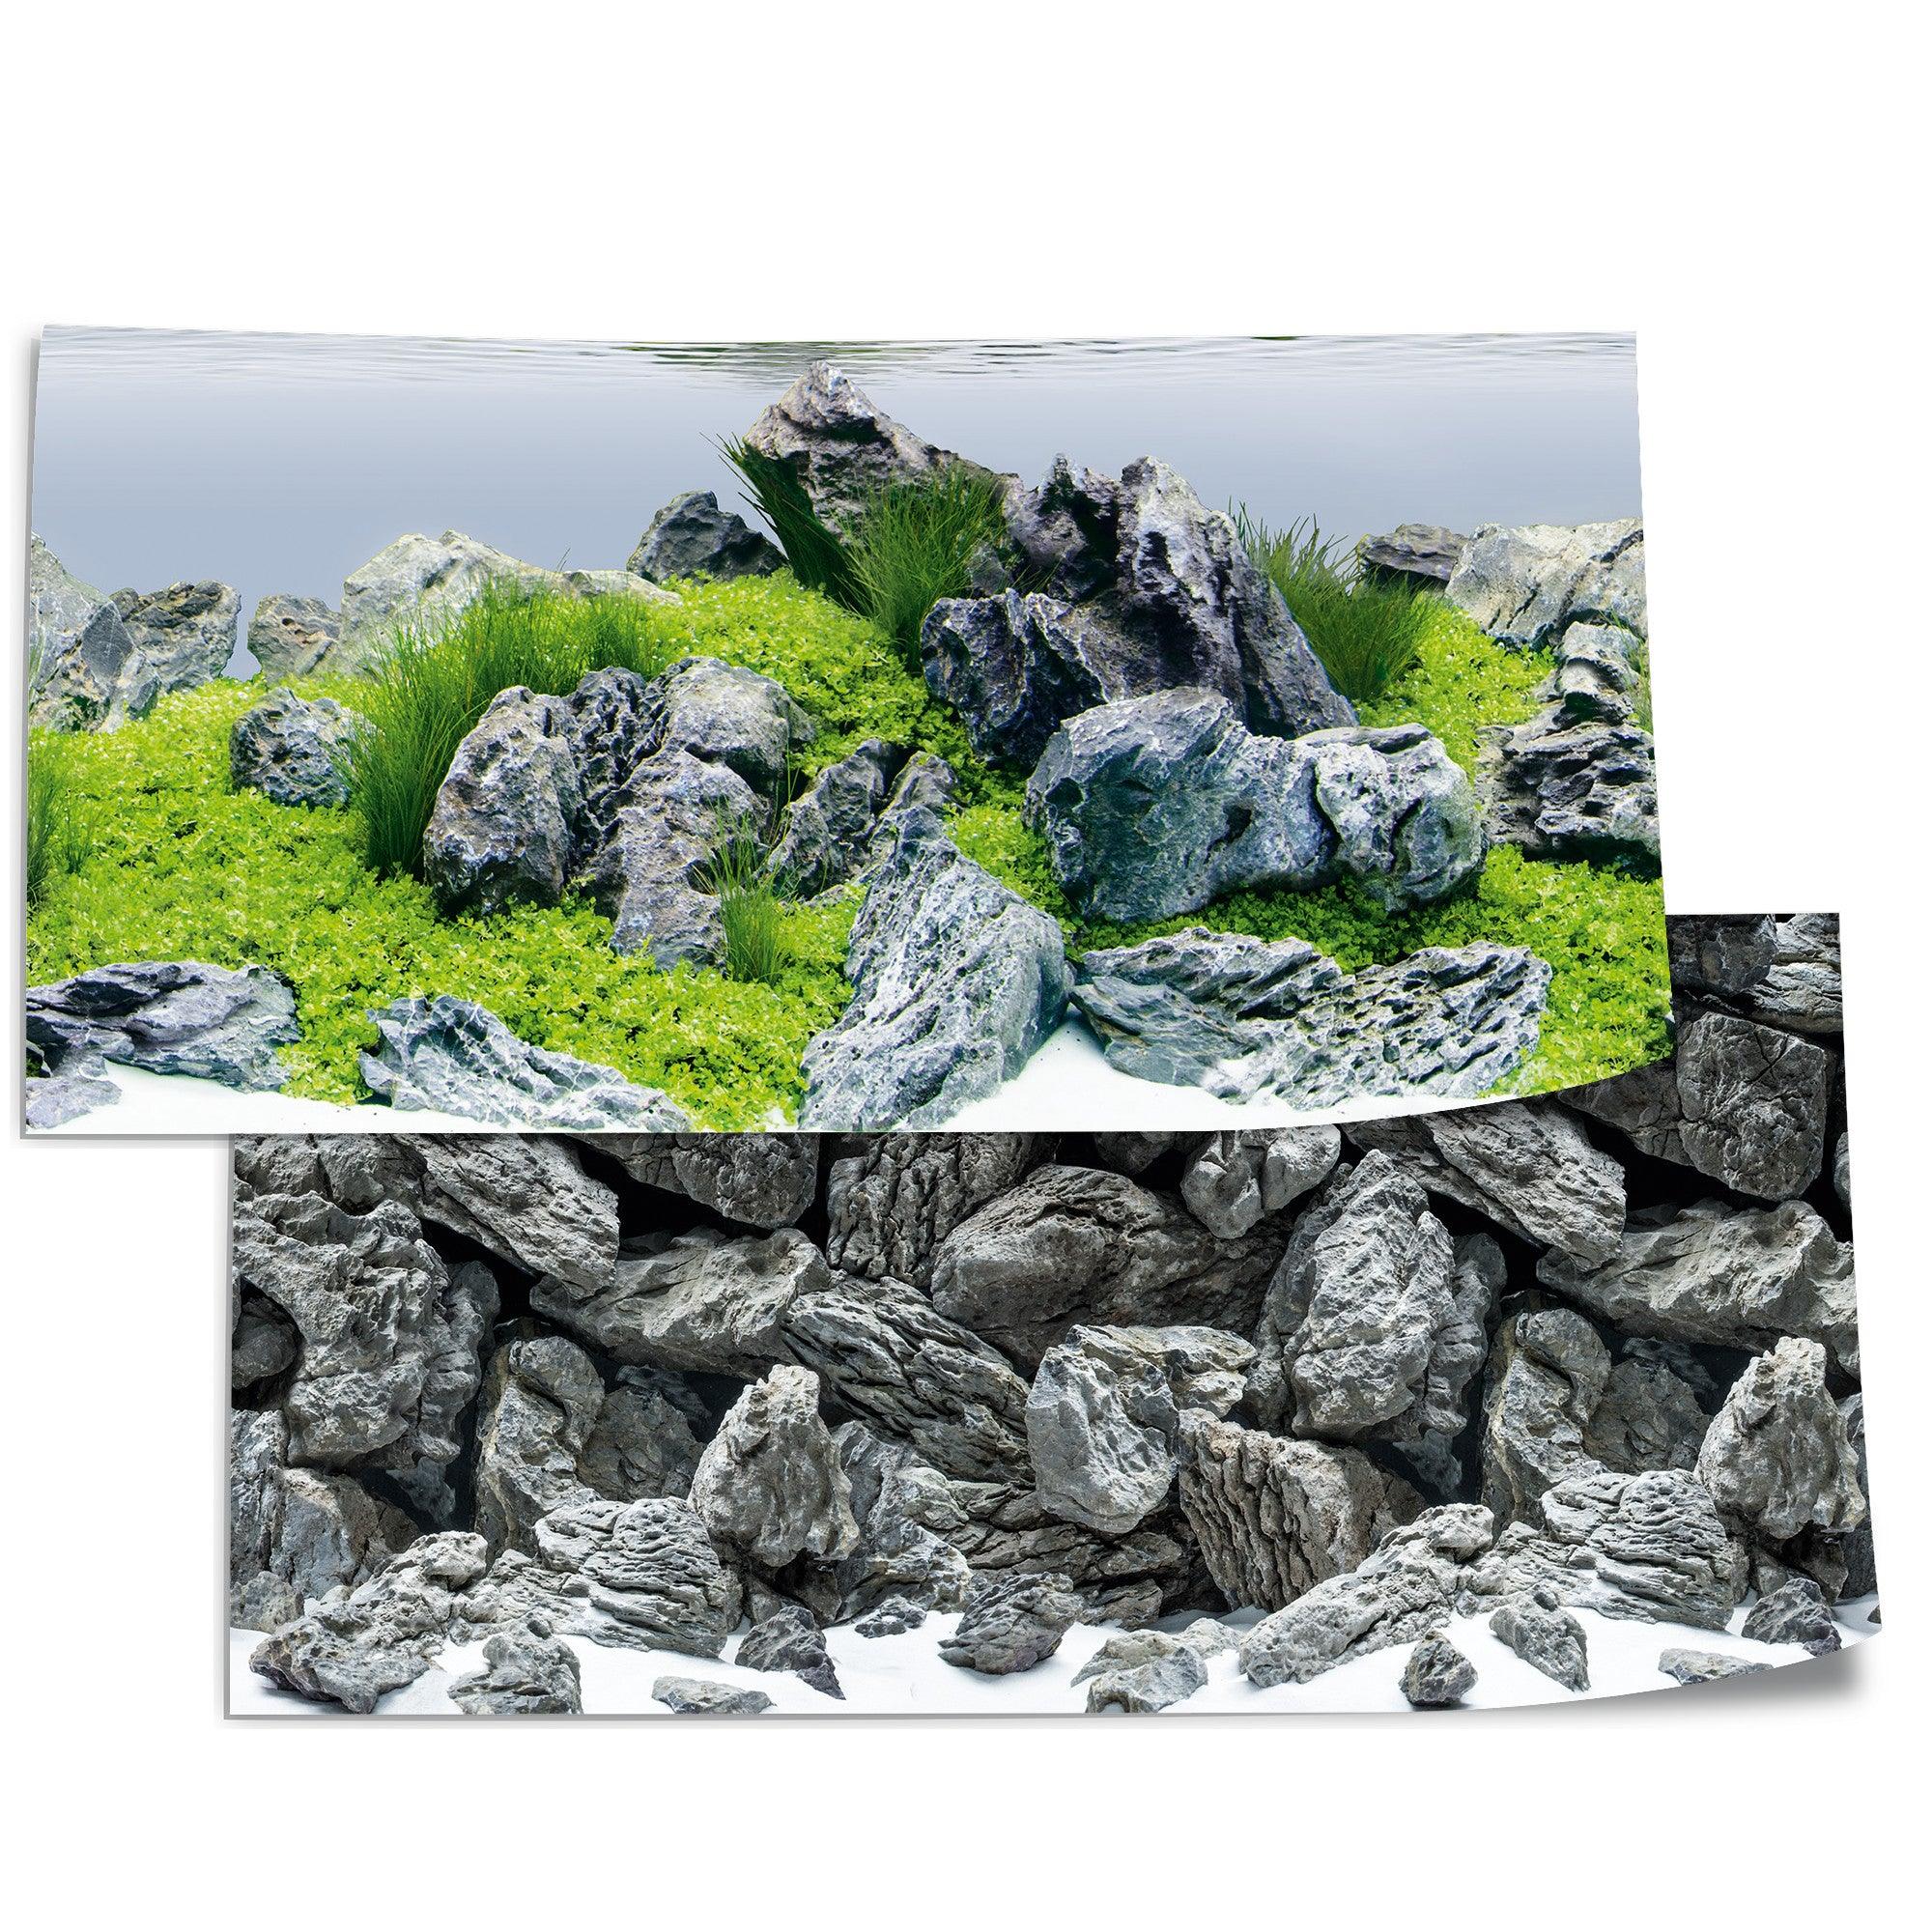 Juwel Rock Aquascape Aquarium Background Wallpaper